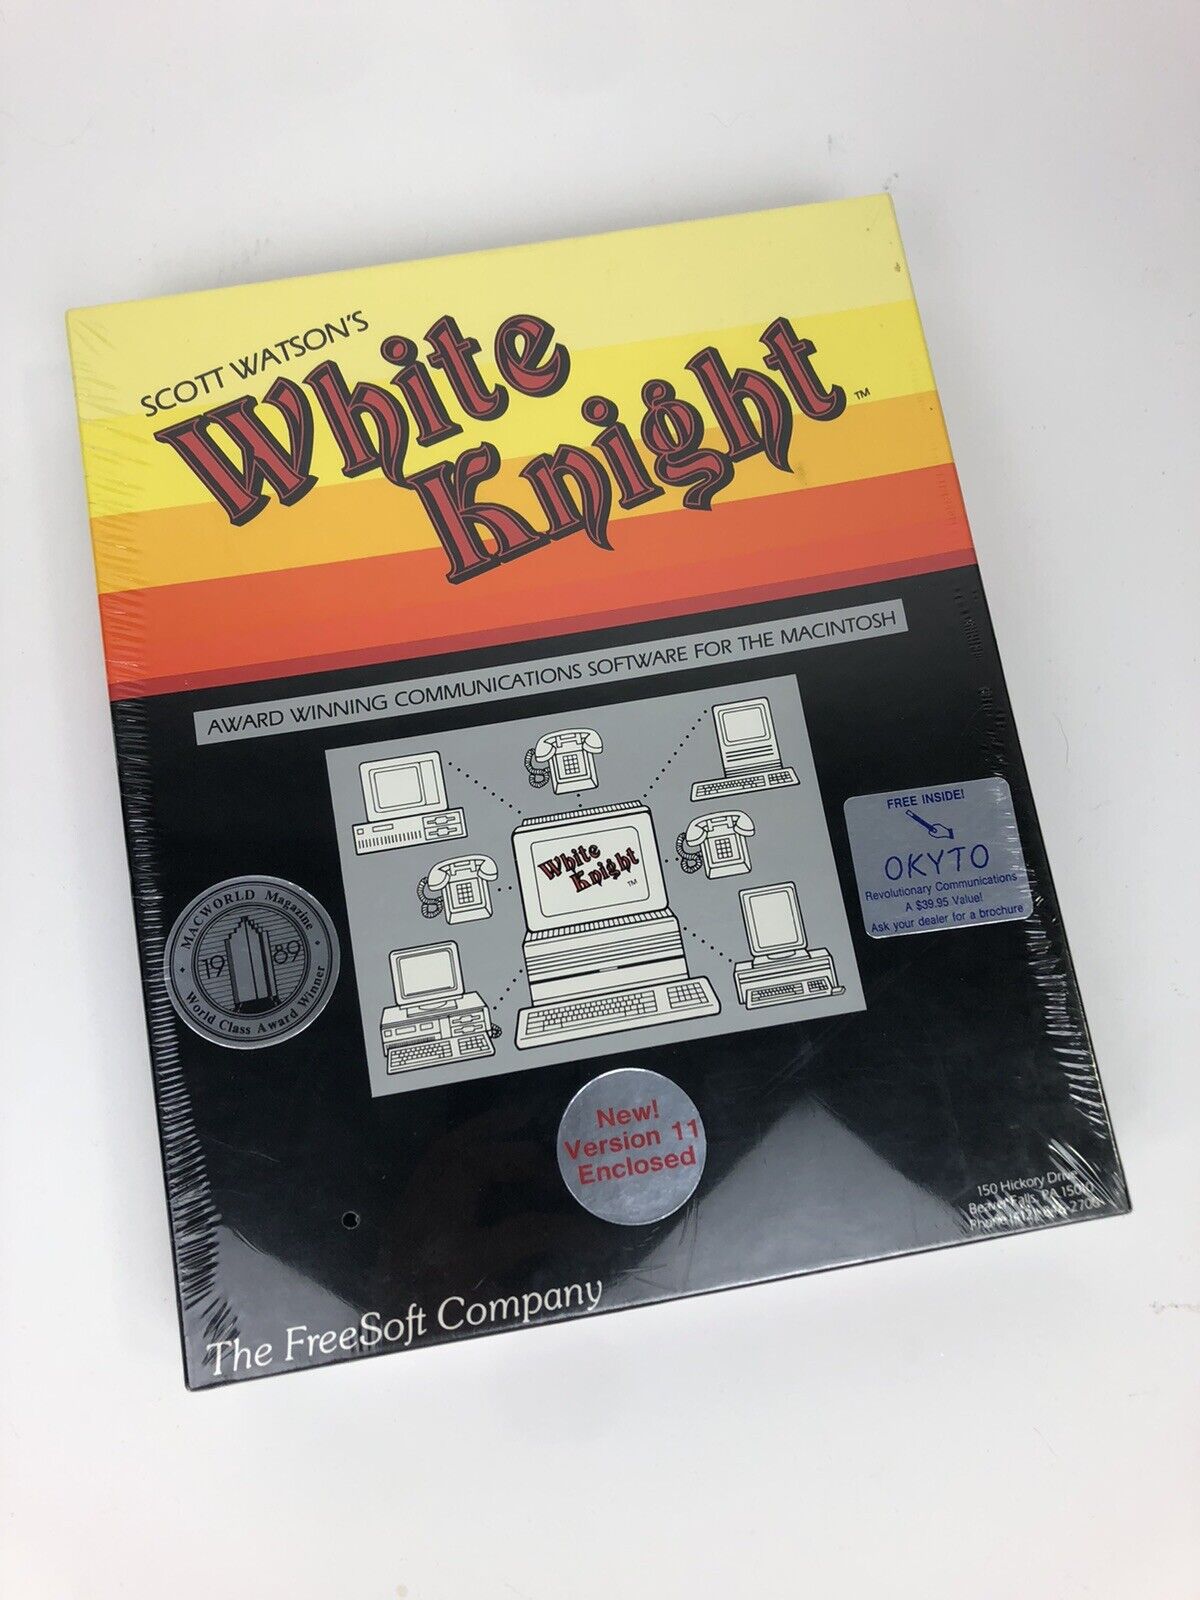 Scott Watson’s White Knight Communication Software - Apple/Macintosh 11 (SEALED)